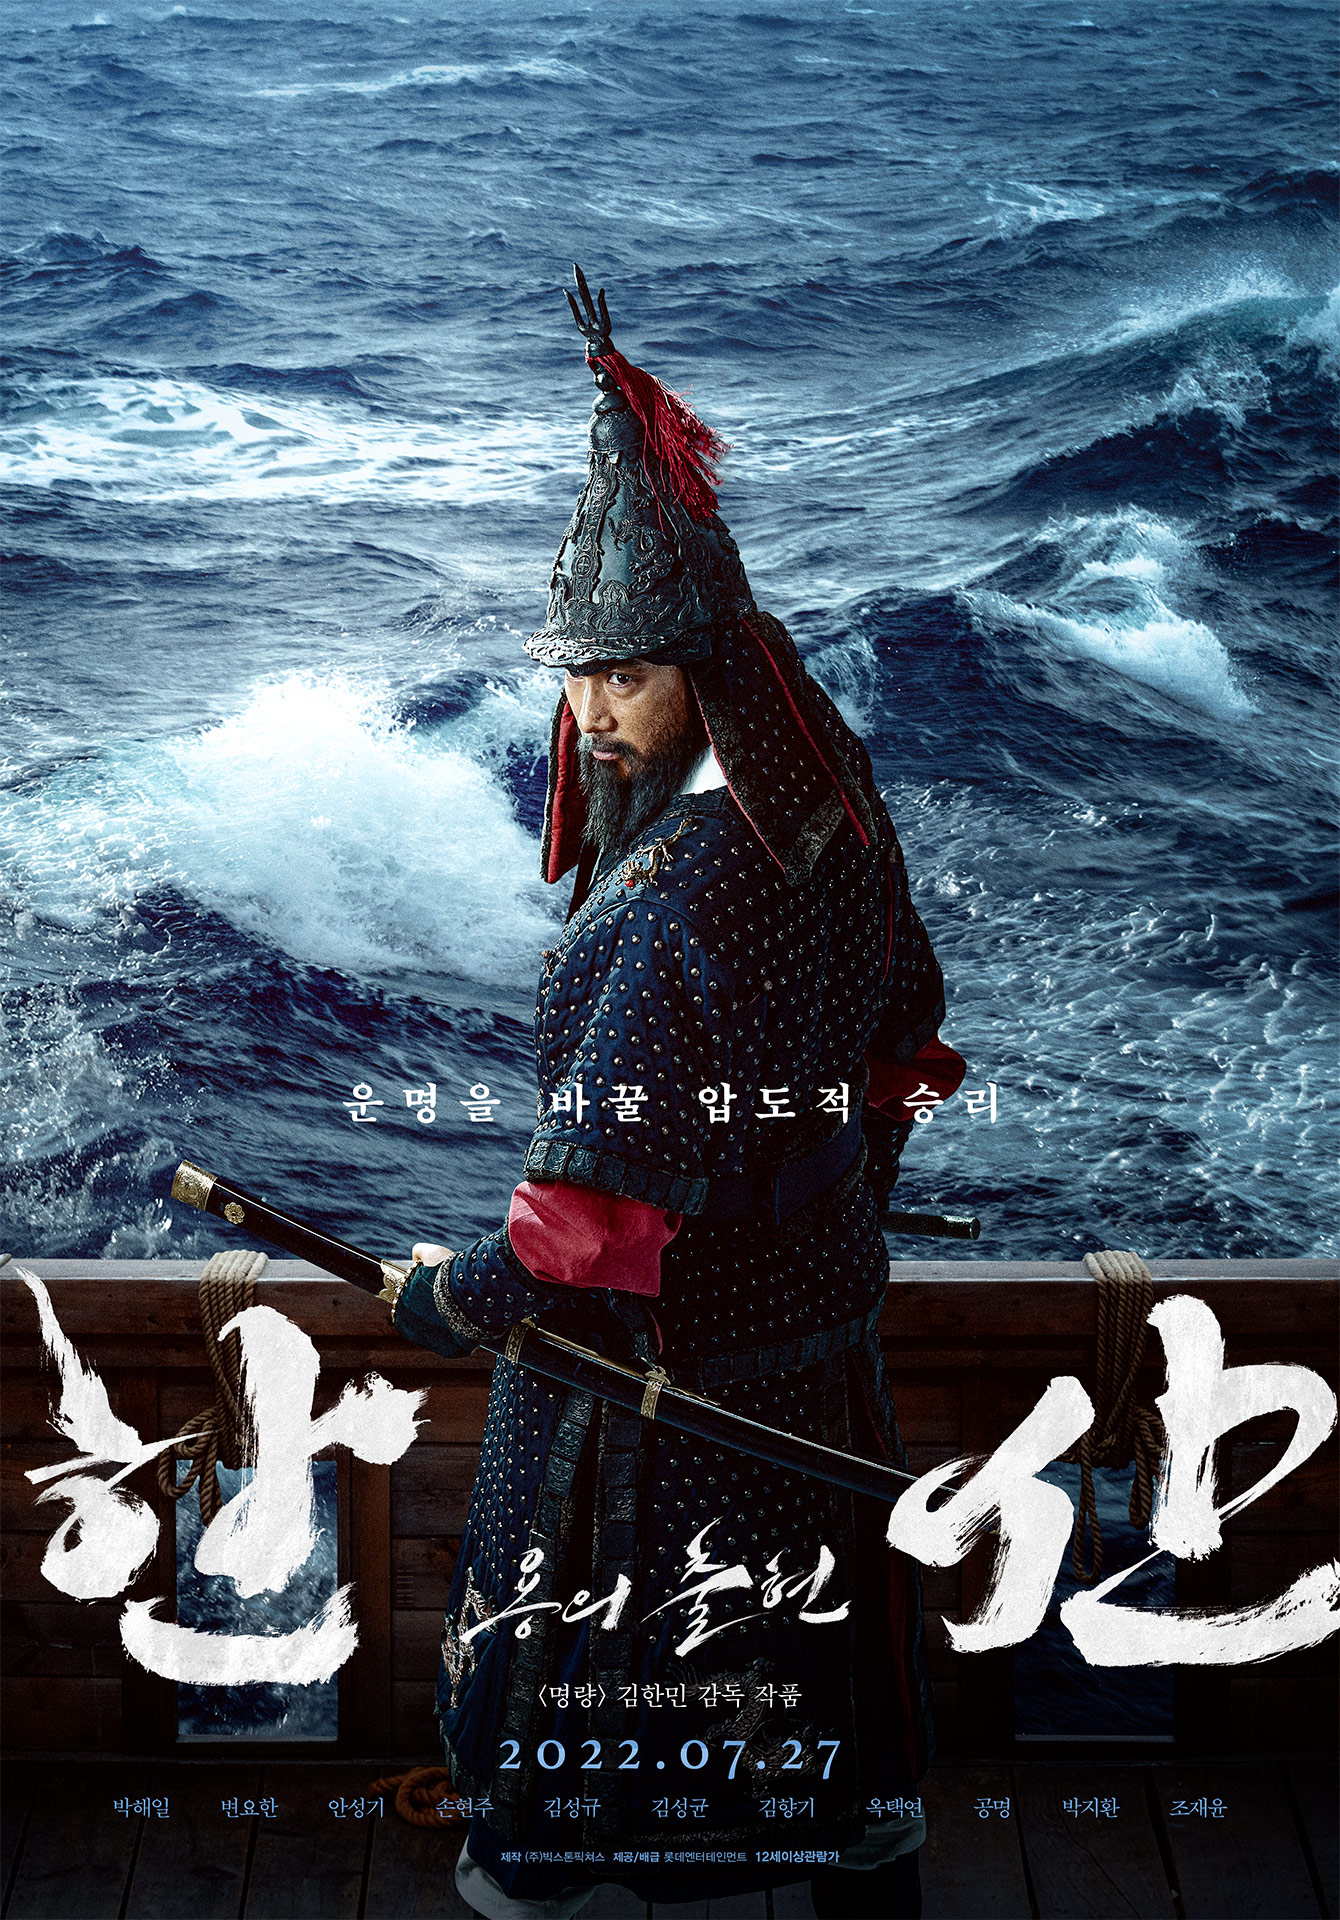 ดูหนังออนไลน์ฟรี Hansan Rising Dragon (2022) ฮันซัน แม่ทัพมังกร หนังเต็มเรื่อง หนังมาสเตอร์ ดูหนังHD ดูหนังออนไลน์ ดูหนังใหม่